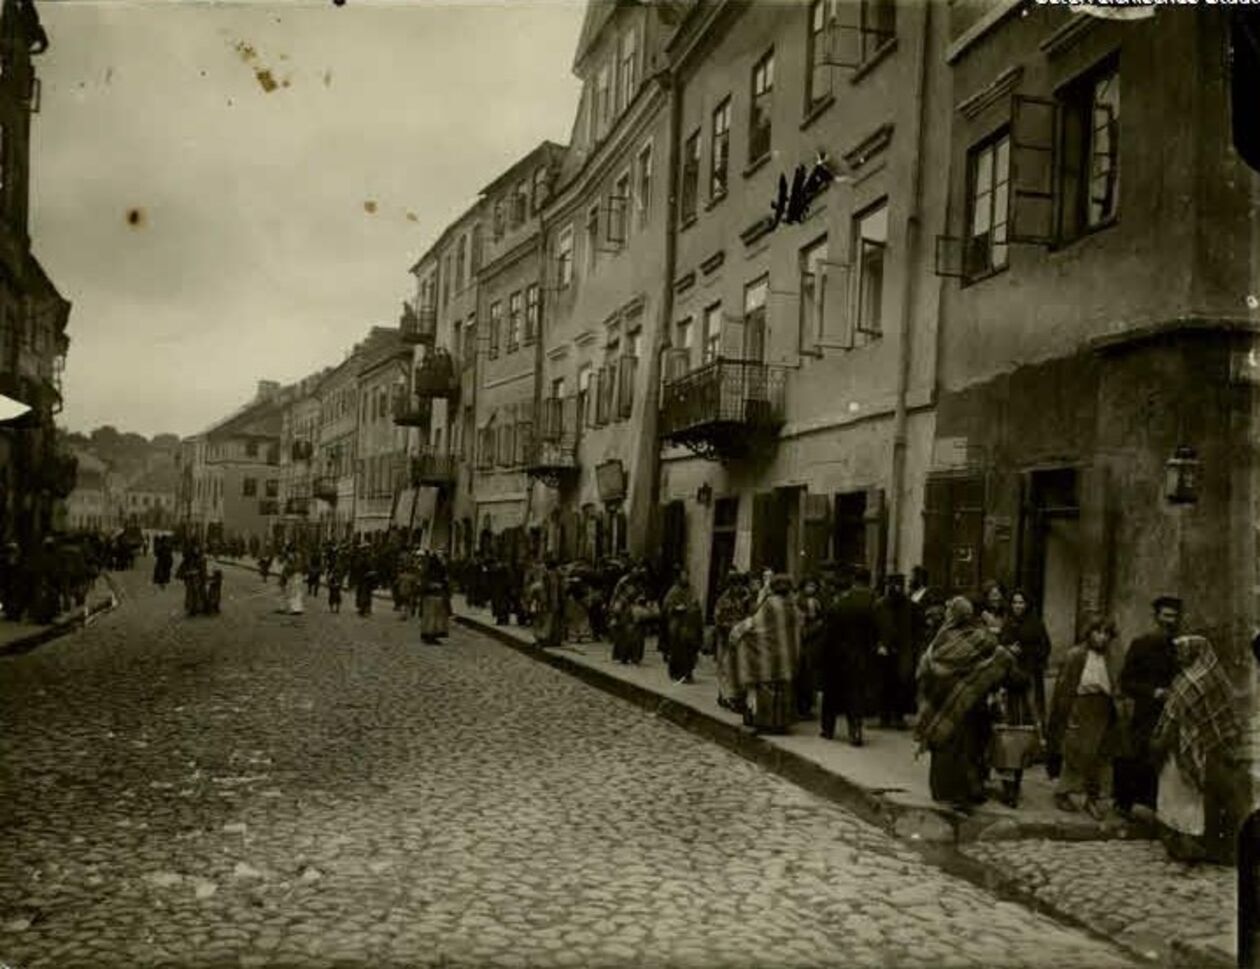  <p>Dzielnica żydowska w Lublinie. Prawdopoodobnie ulica Szeroka</p>